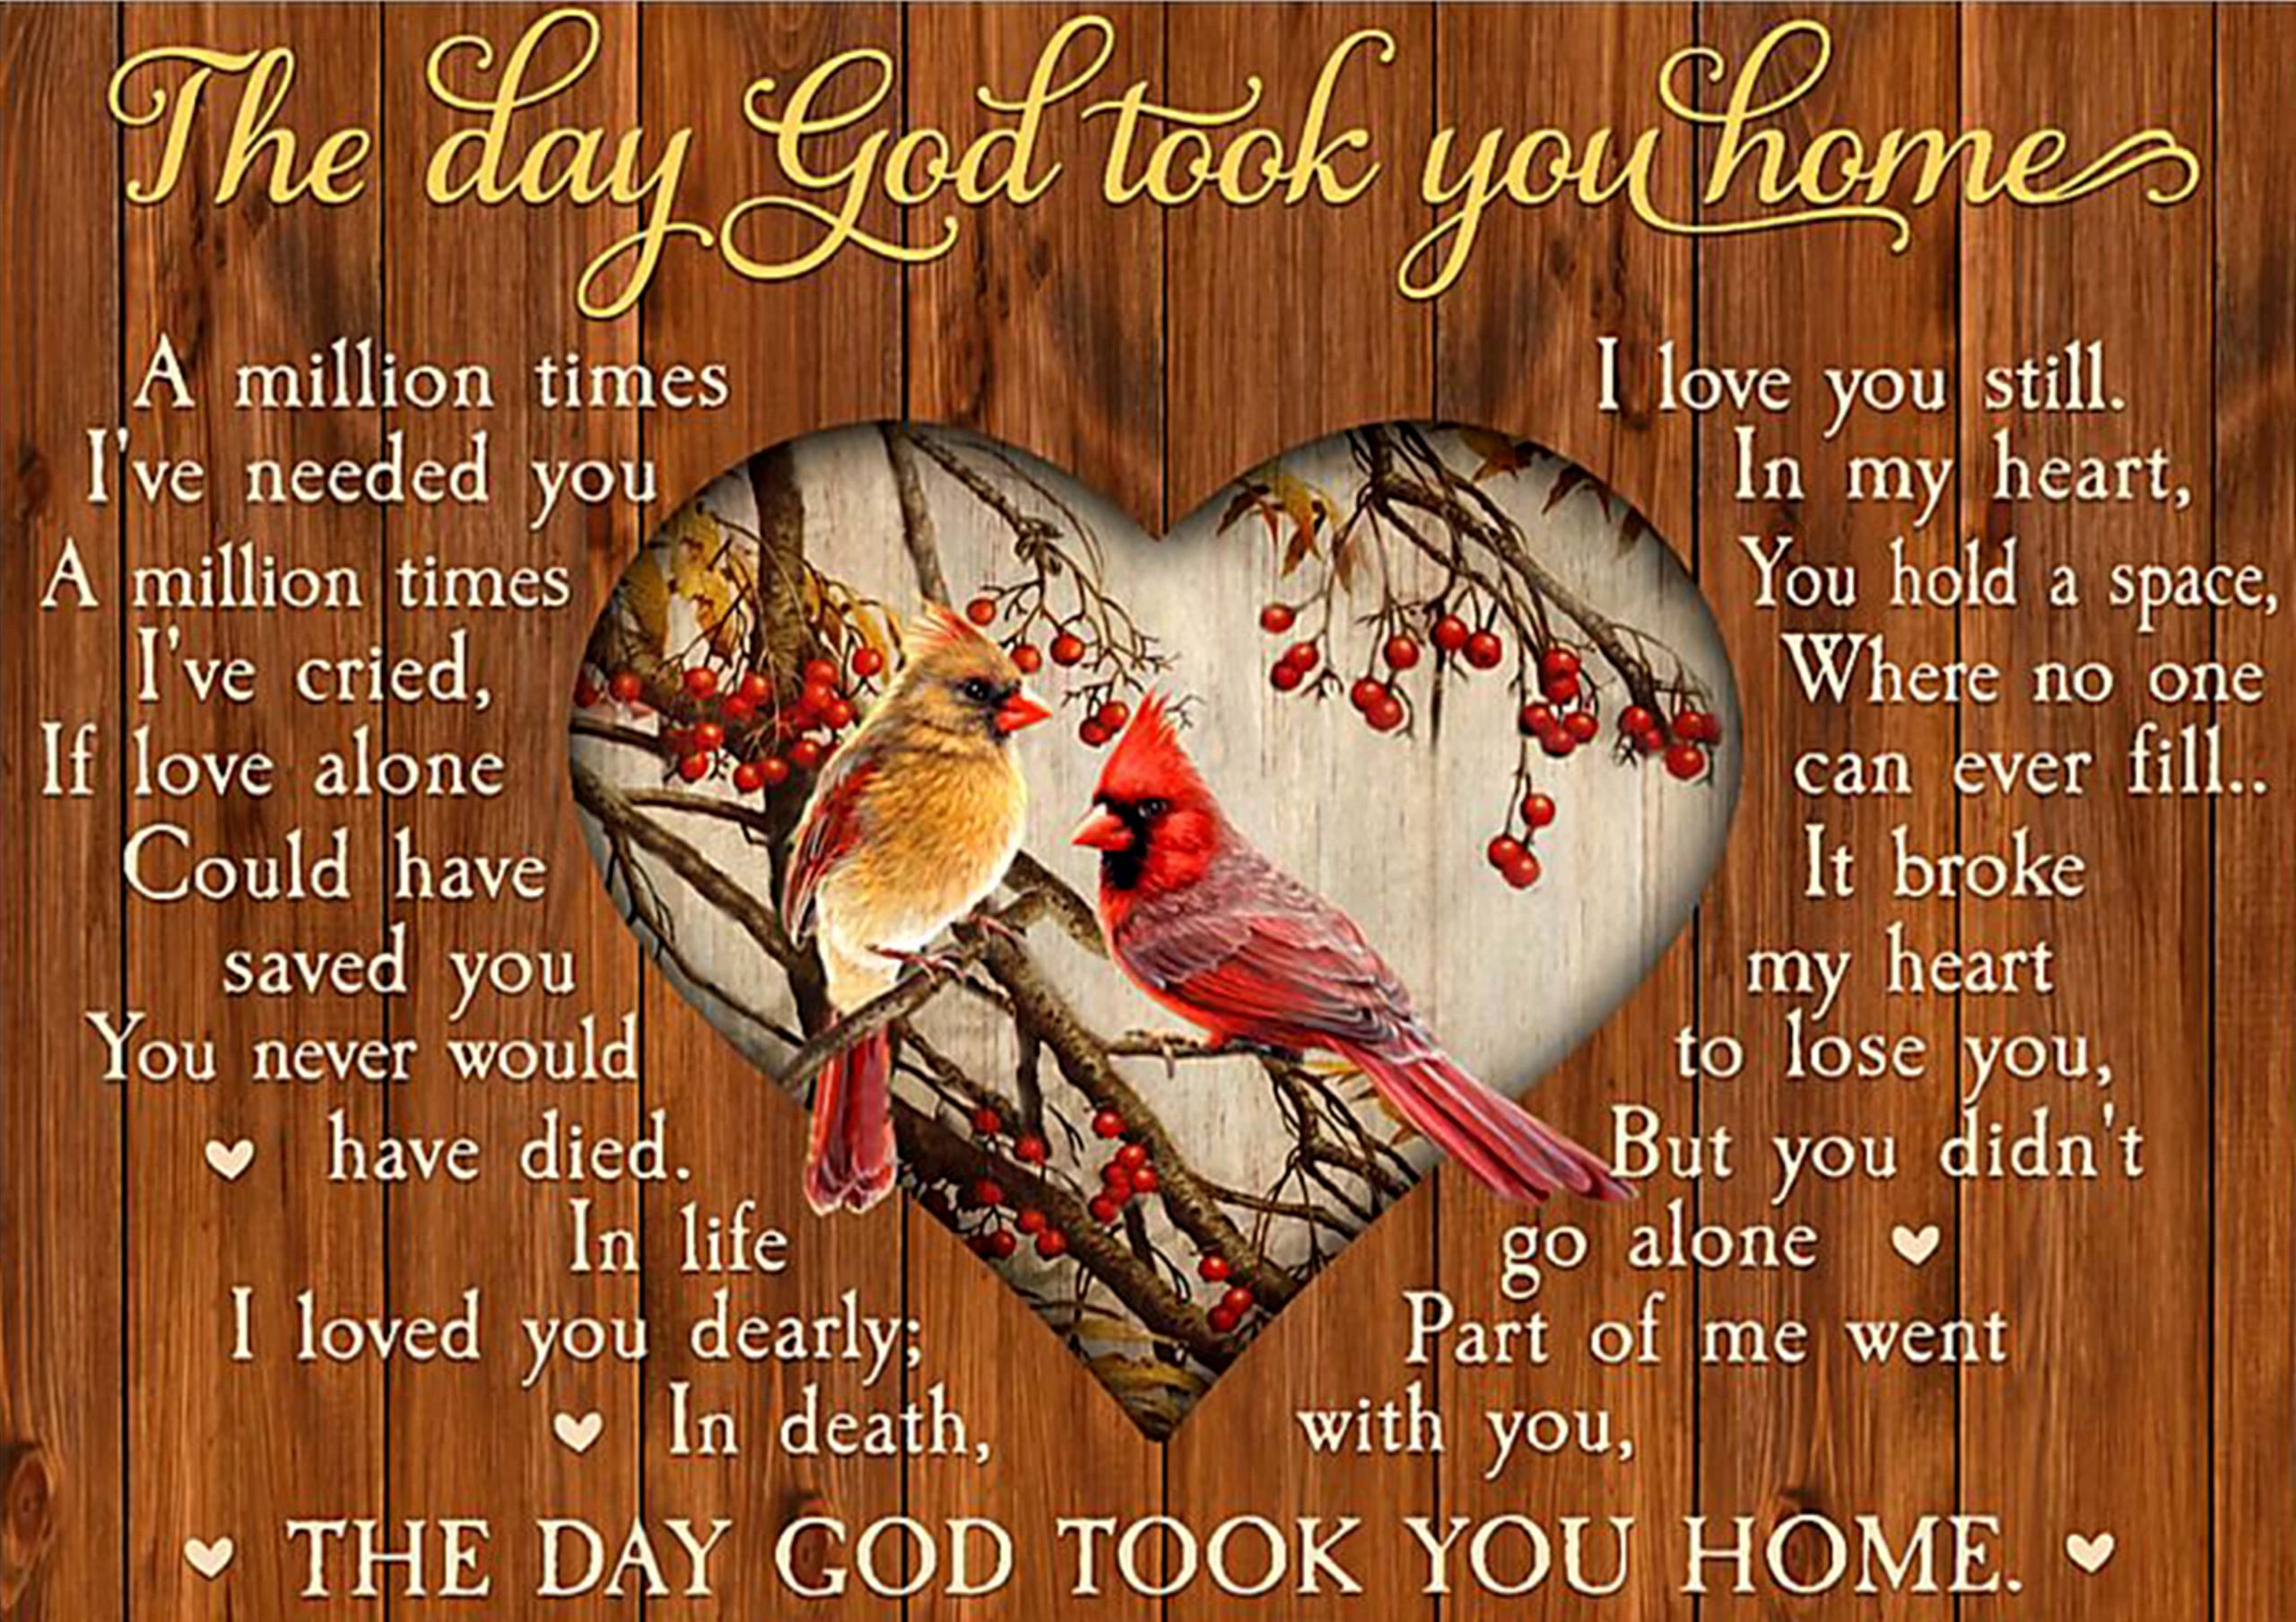 the day God took you home cardinalis cardinalis poster 1 - Copy (2)